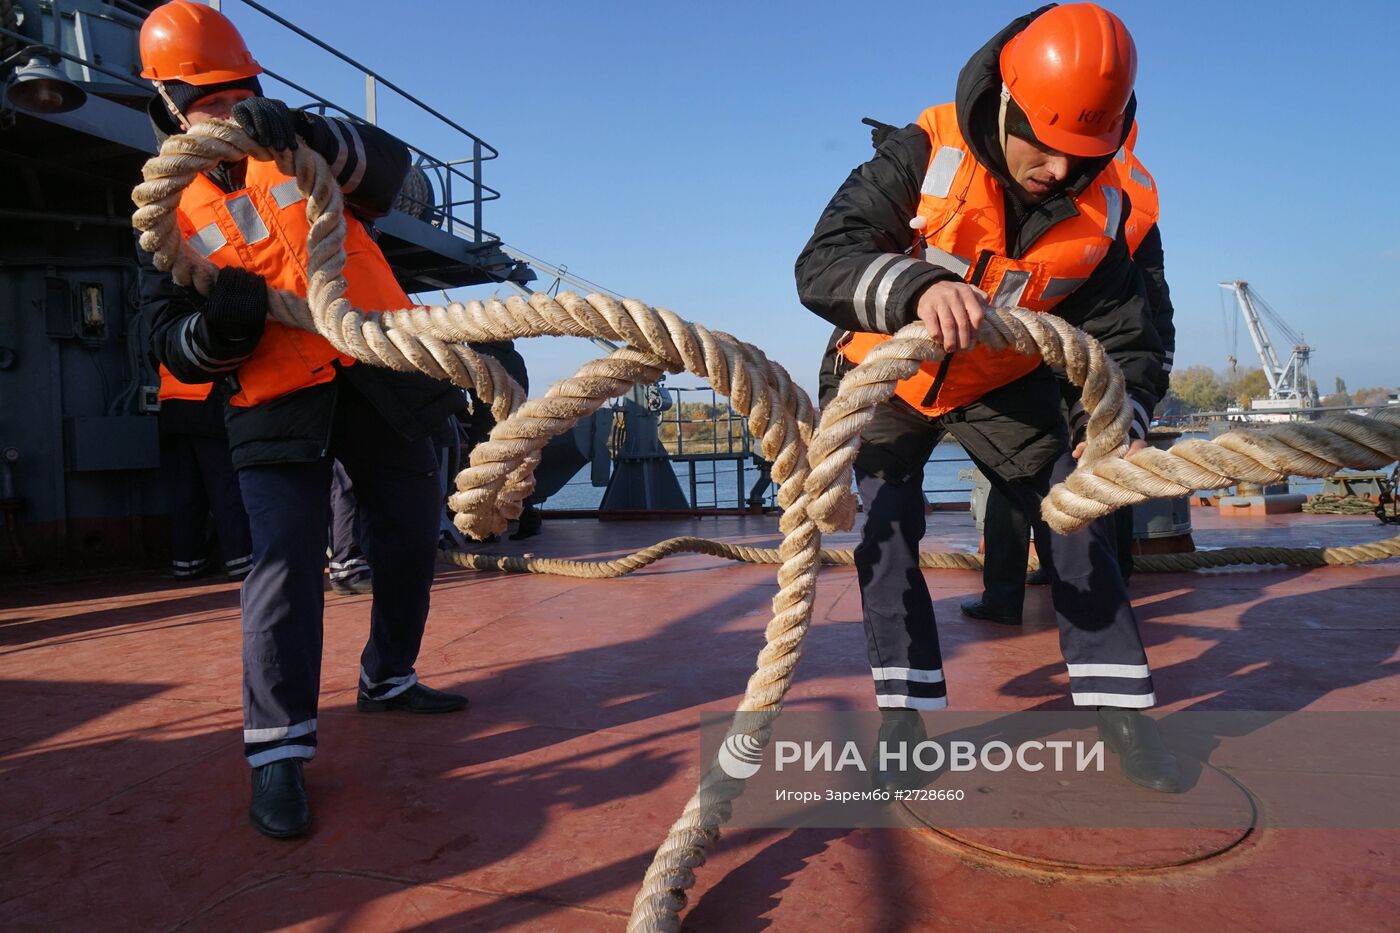 Учебный корабль "Смольный" прибыл в порт Балтийска